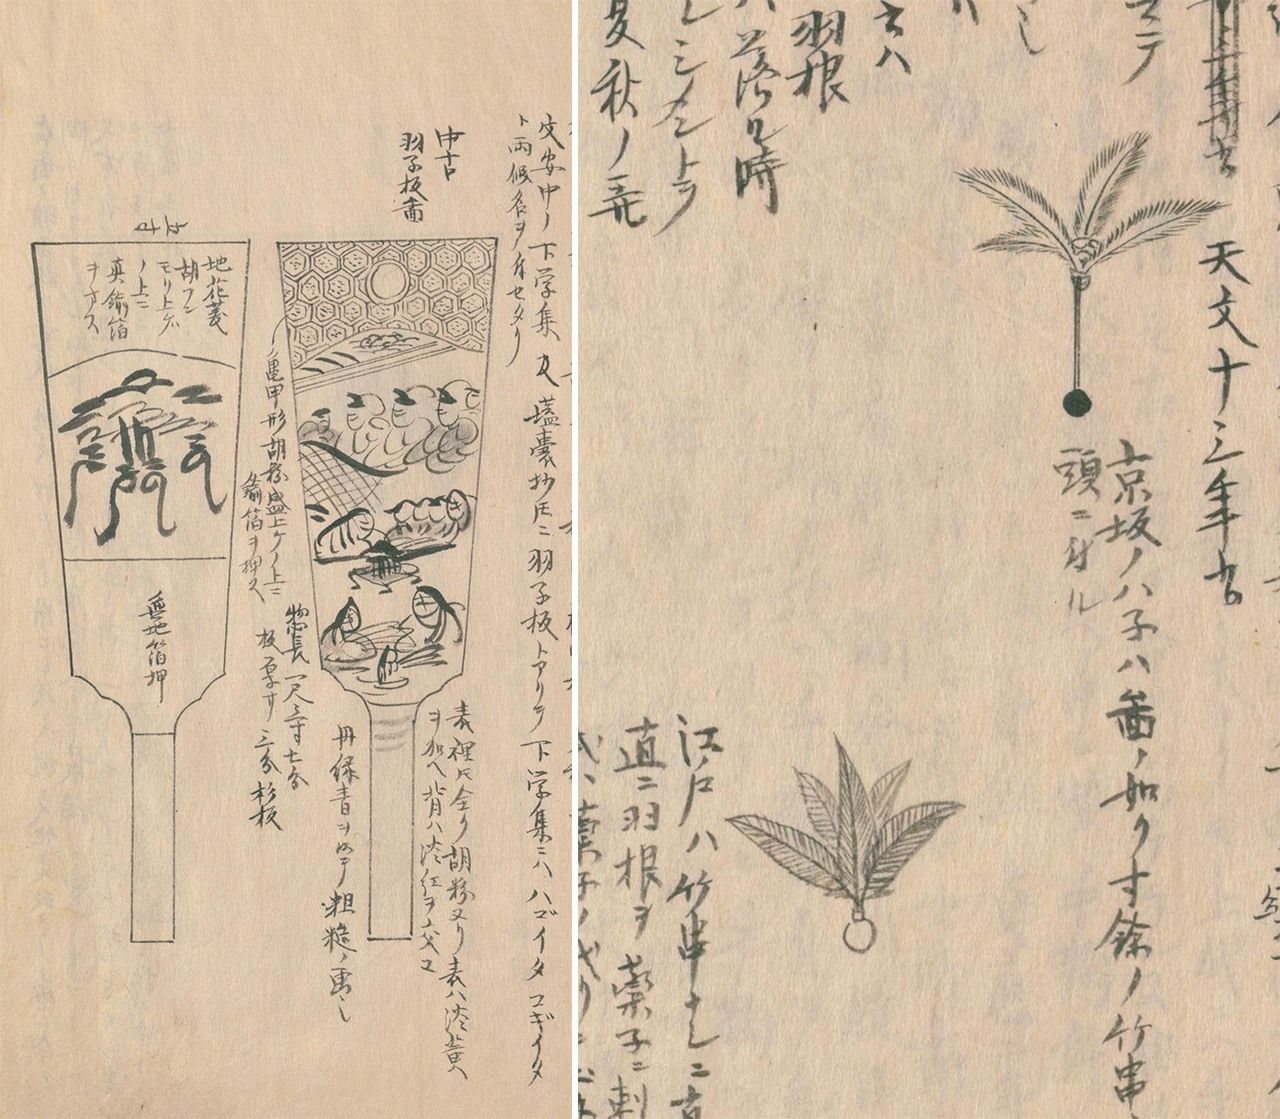 文化文政期（1804-1831年）左右的「羽子板」和「羽」。羽子板兩面畫著江戶風情的圖案。羽根，上面是京阪（上方）的，下面是江戶的造型。京阪的小球上插著一根長竹簽，跟羽毛相連，江戶的則沒有竹簽